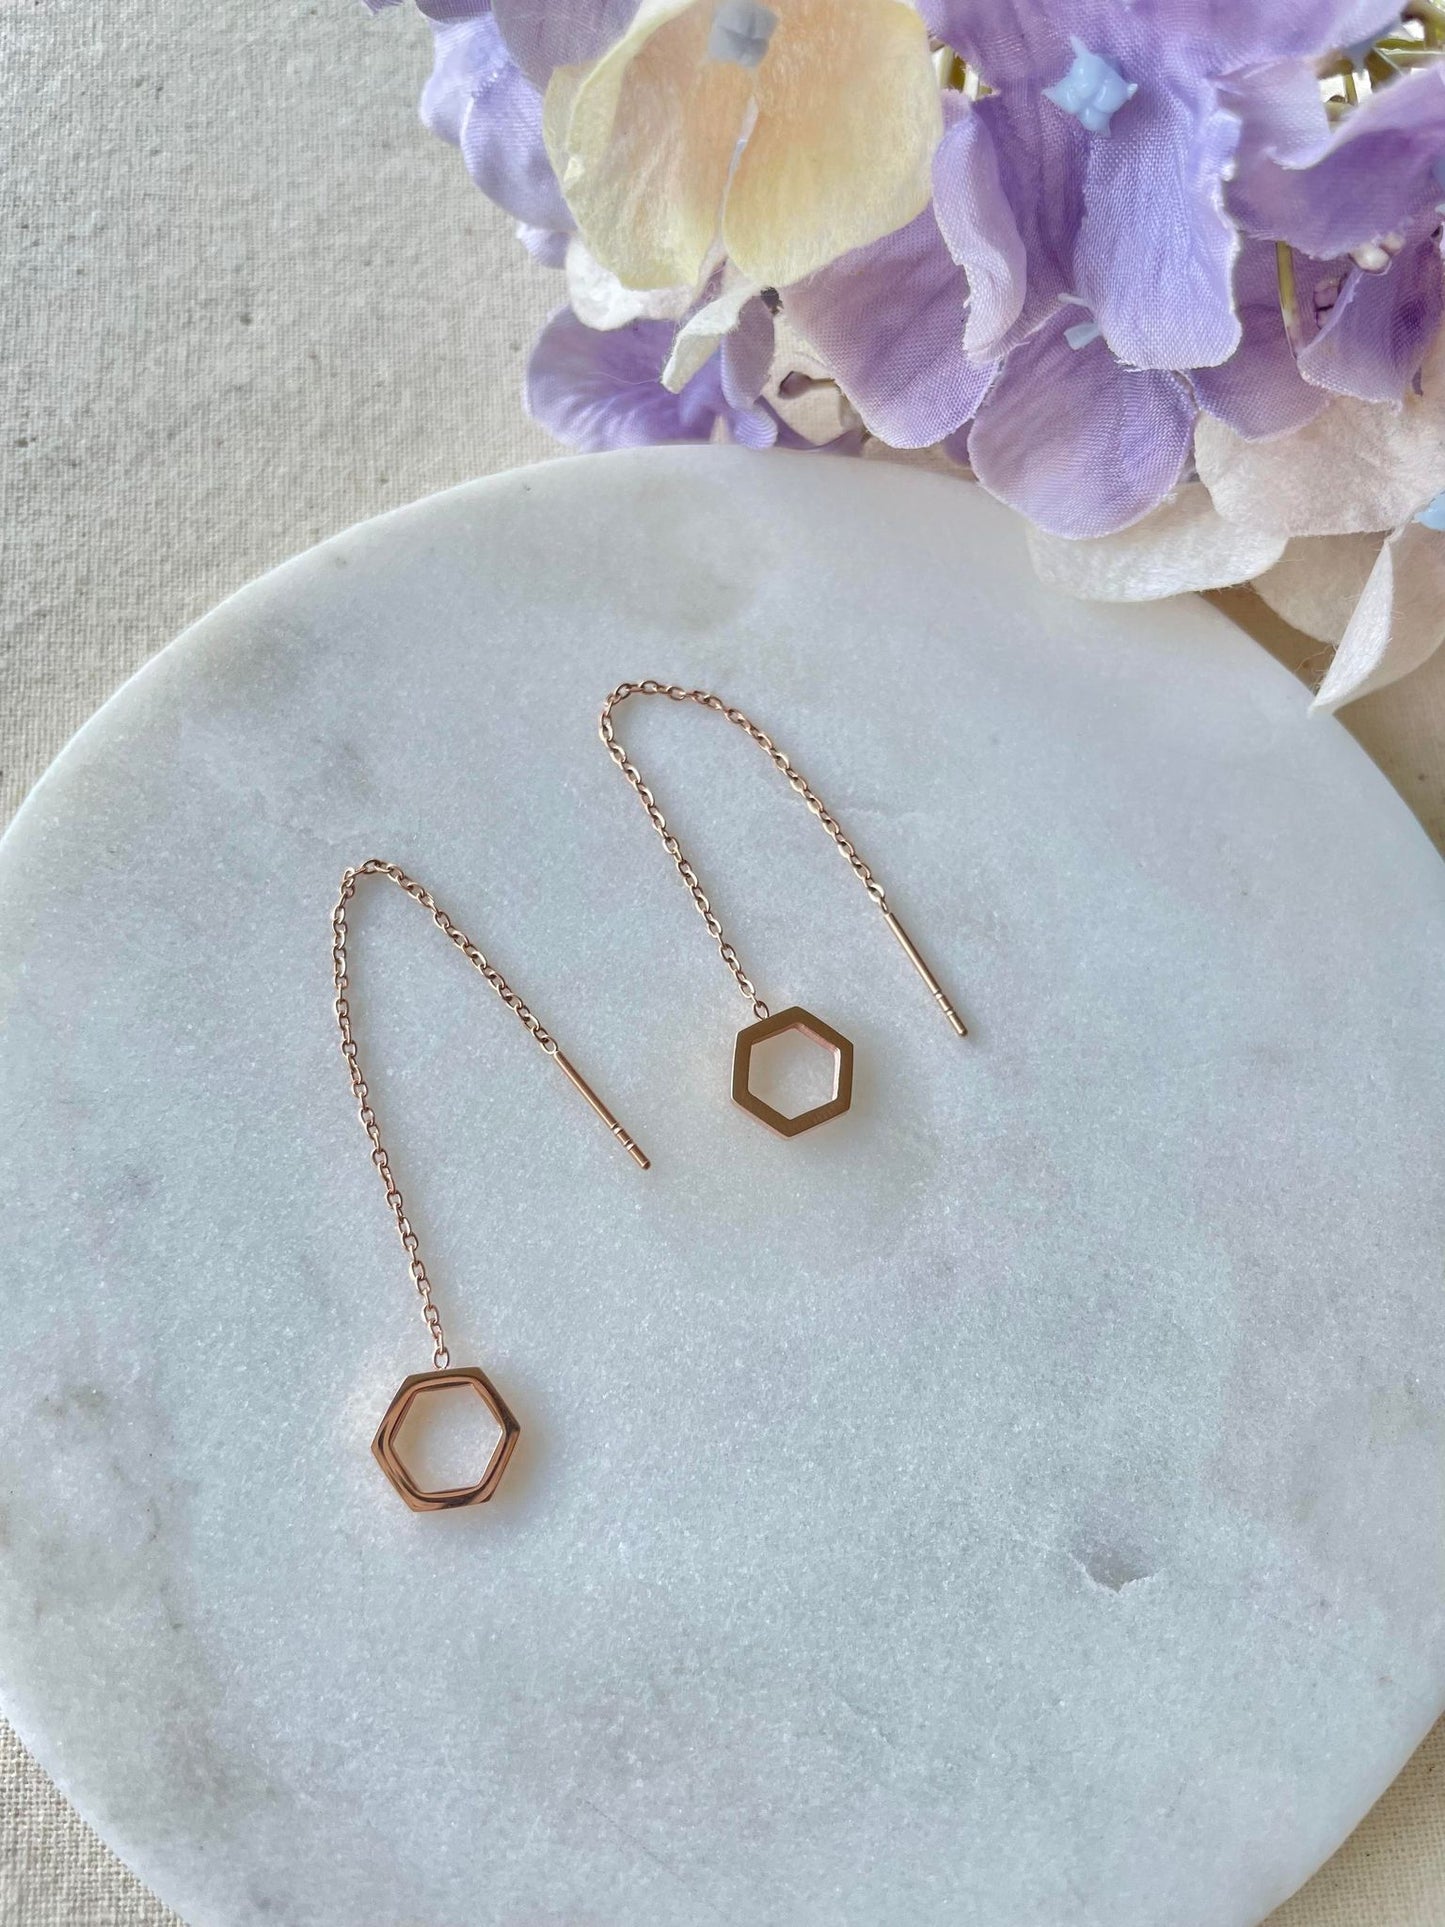 Rose gold hexagon pendant thread earrings